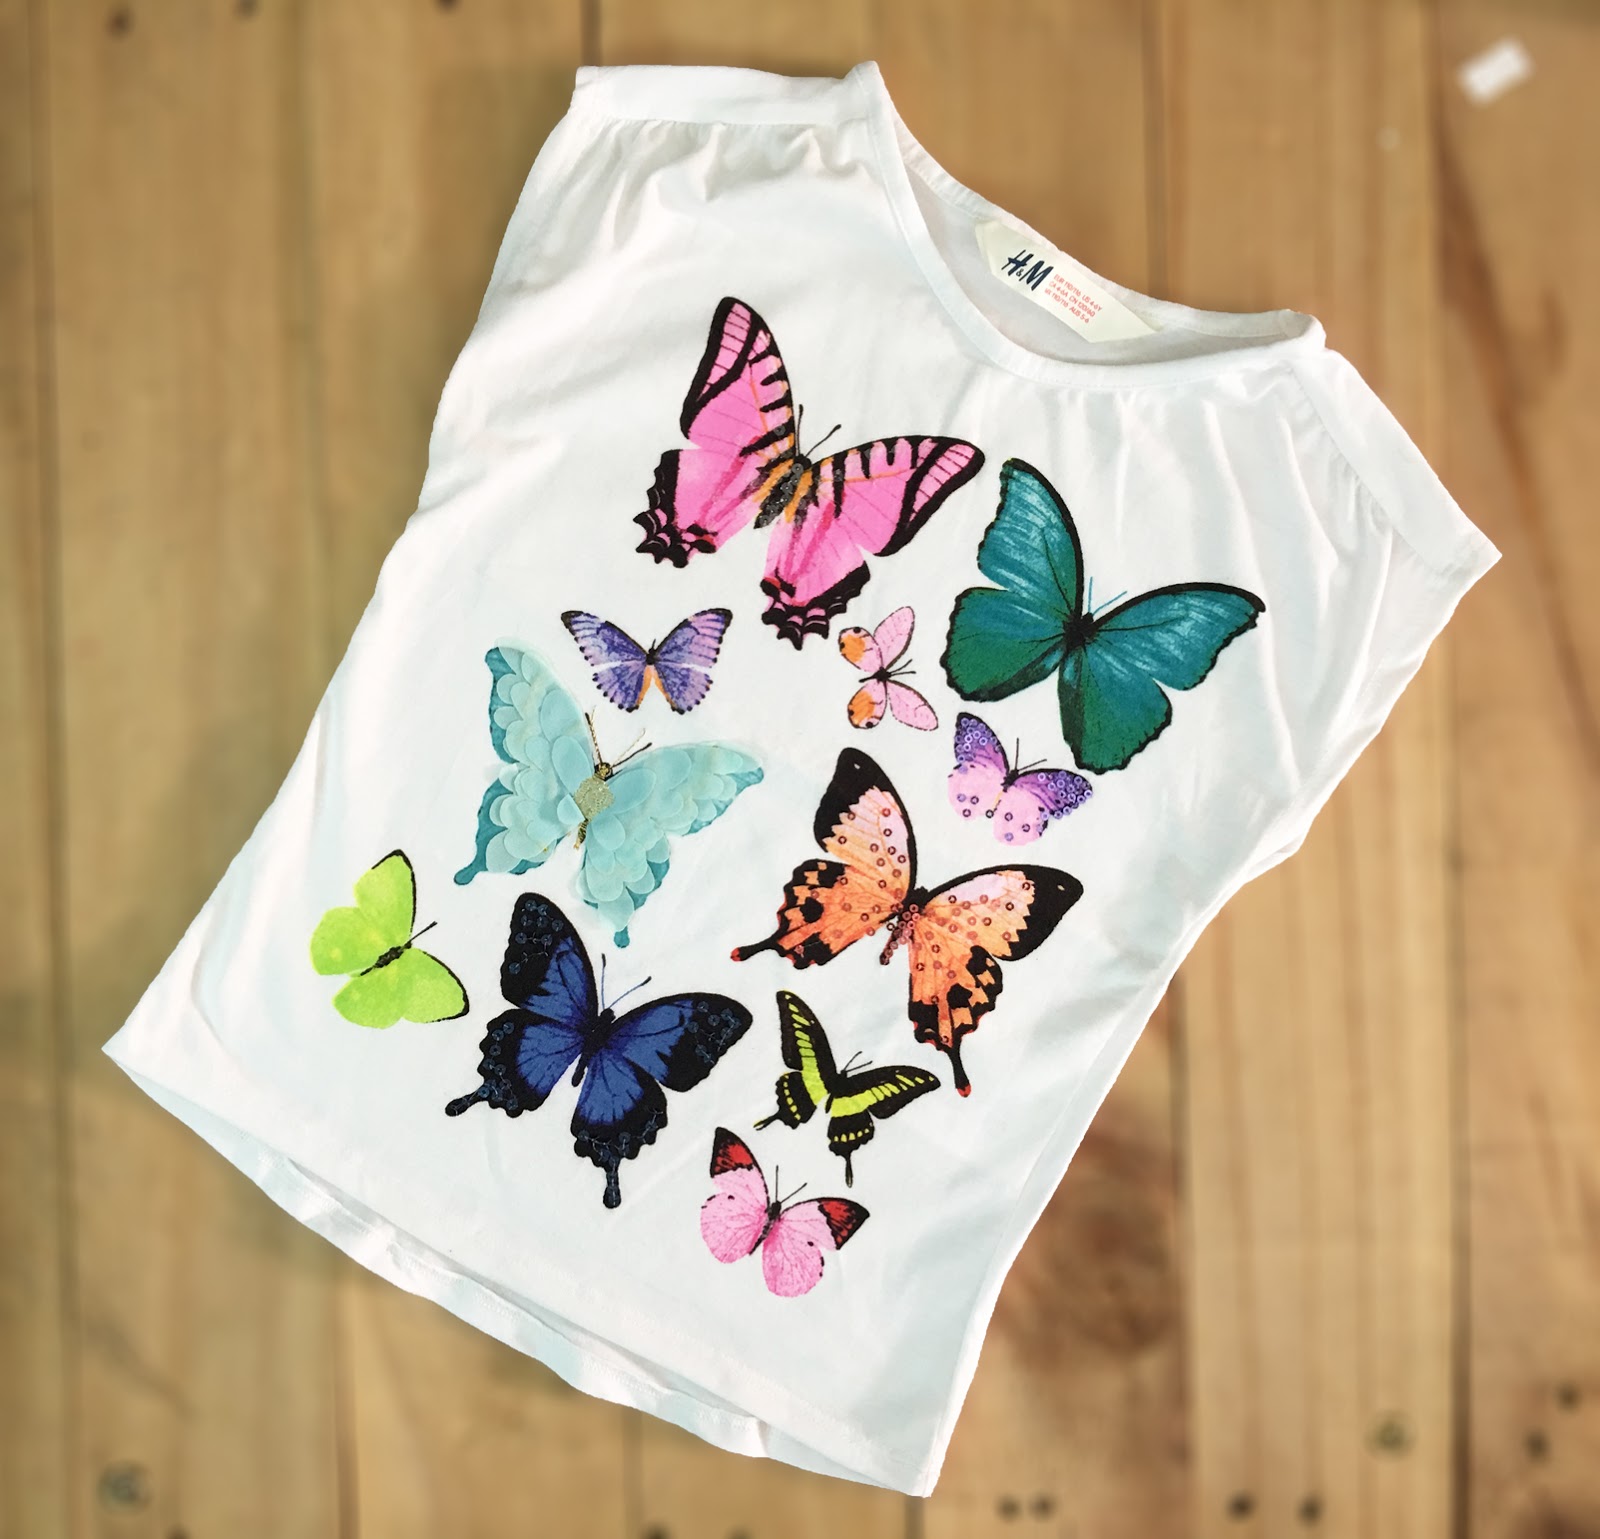 Áo thun bé gái, hiệu H&M, xuất xịn, made in cambodia, mẫu con bướm.